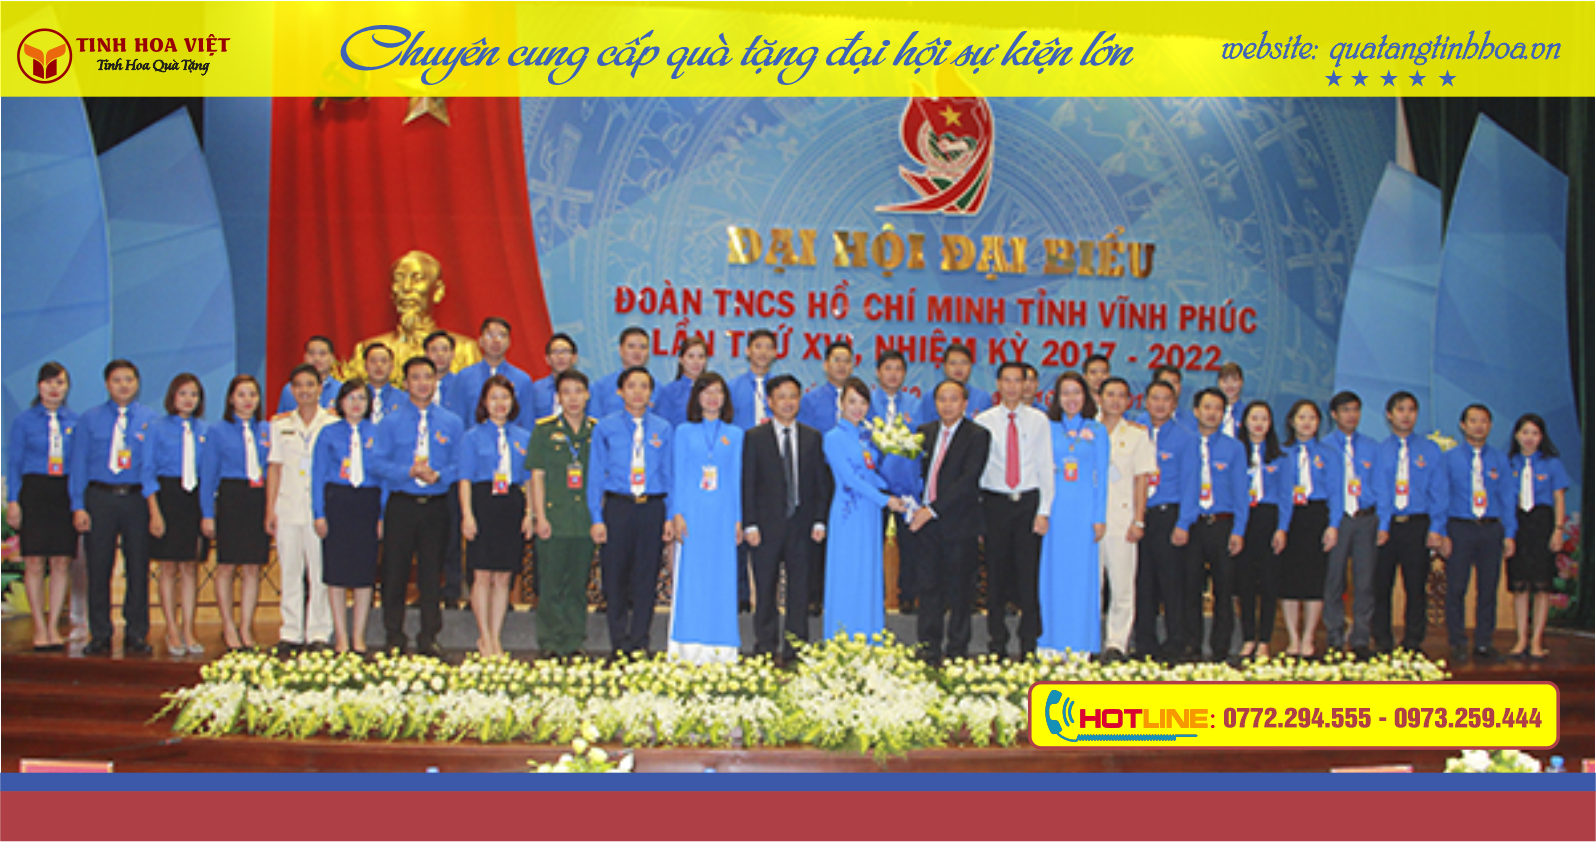 Những lưu ý khi tổ chức Đại Hội Đoàn thanh niên cộng sản Hồ Chí Minh